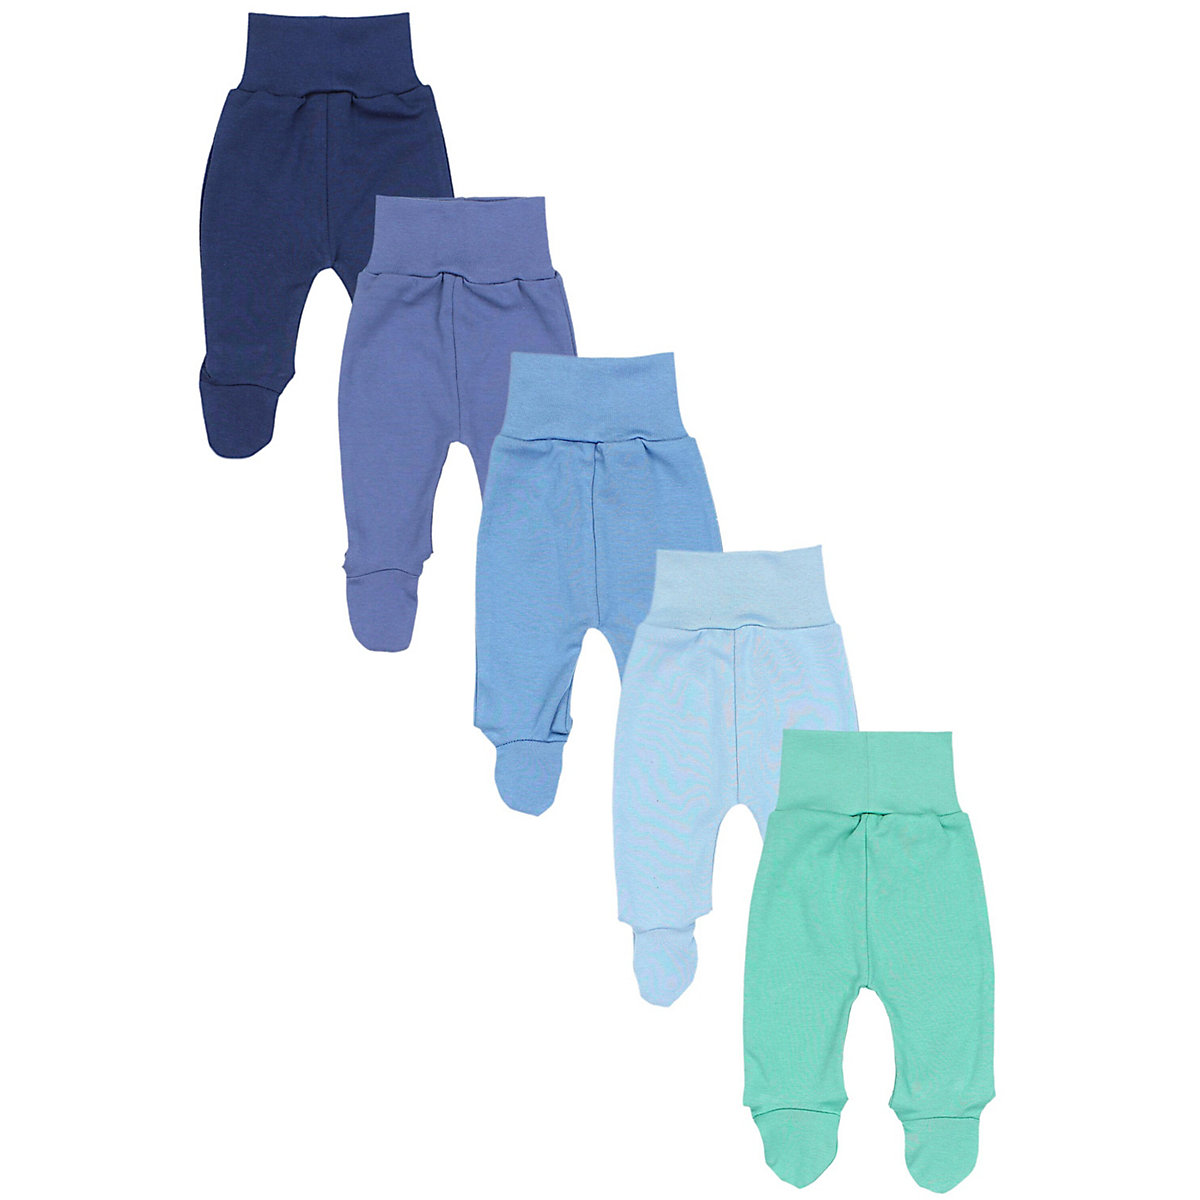 TupTam Baby Hose mit Fuß 5er Pack für Kinder blau/grün